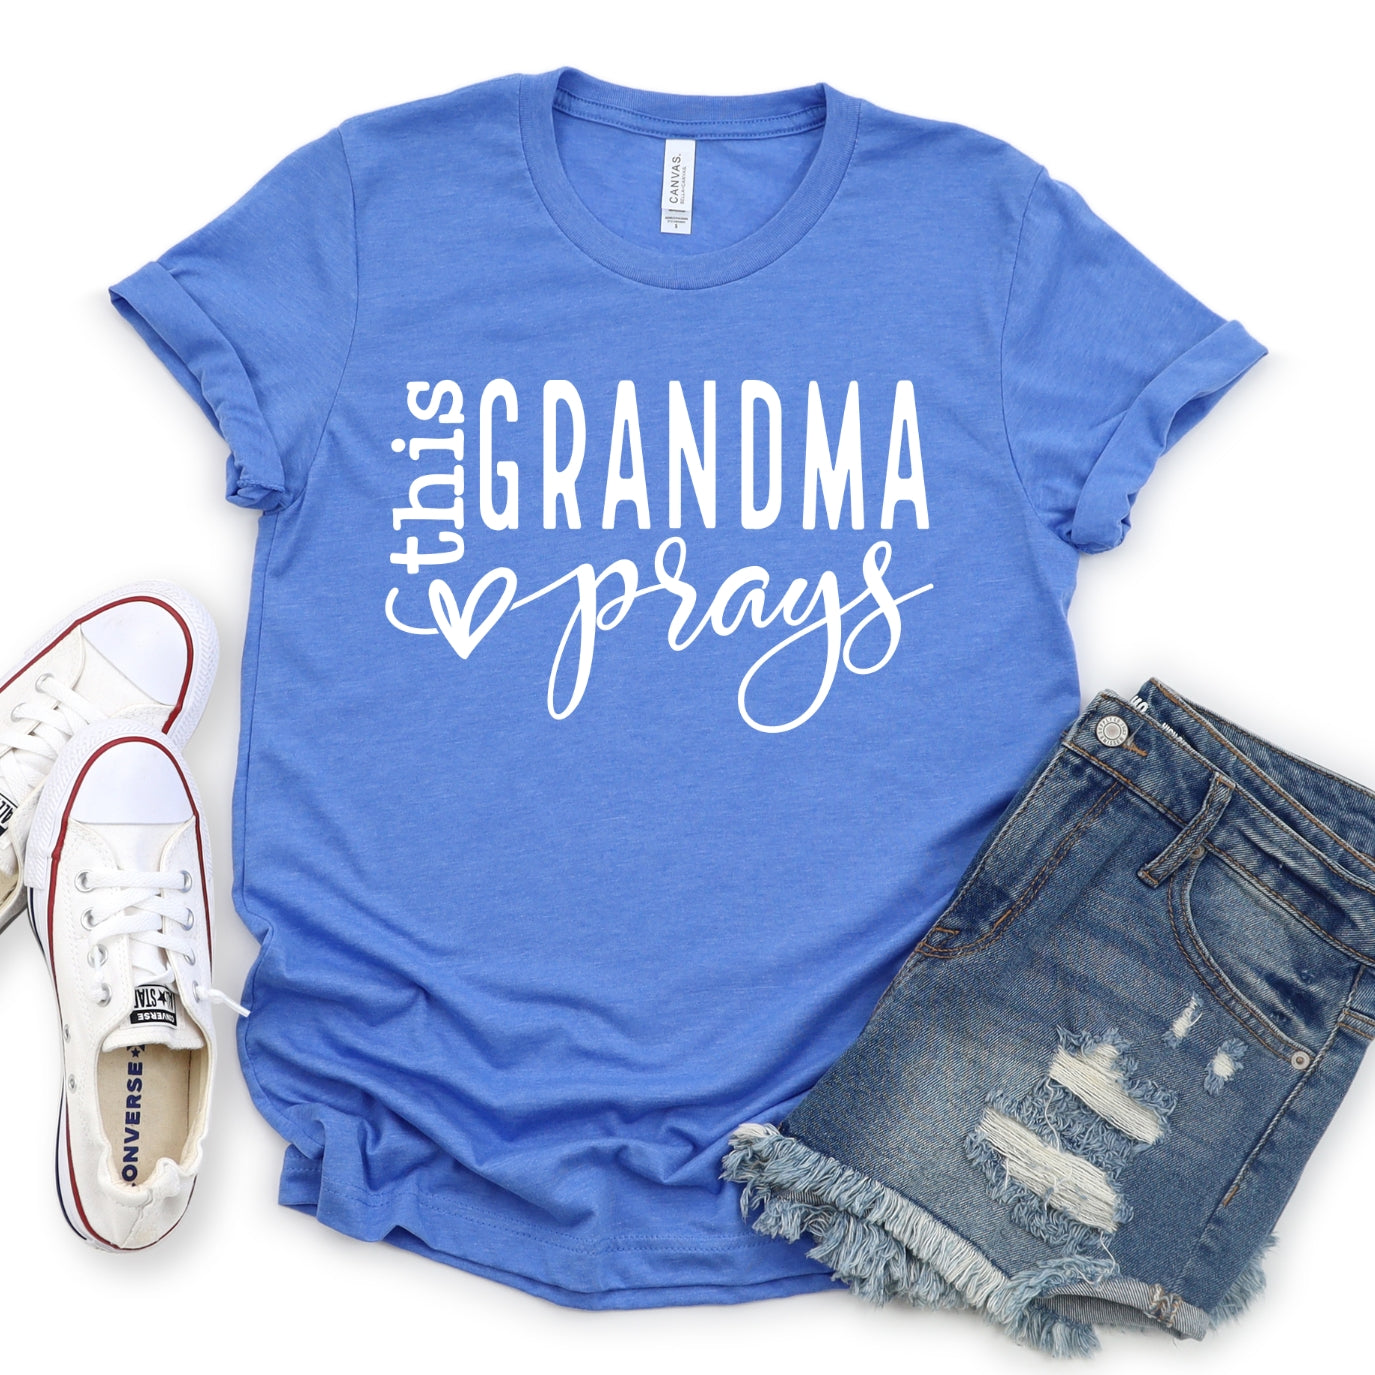 This Grandma Prays Women's T-Shirt